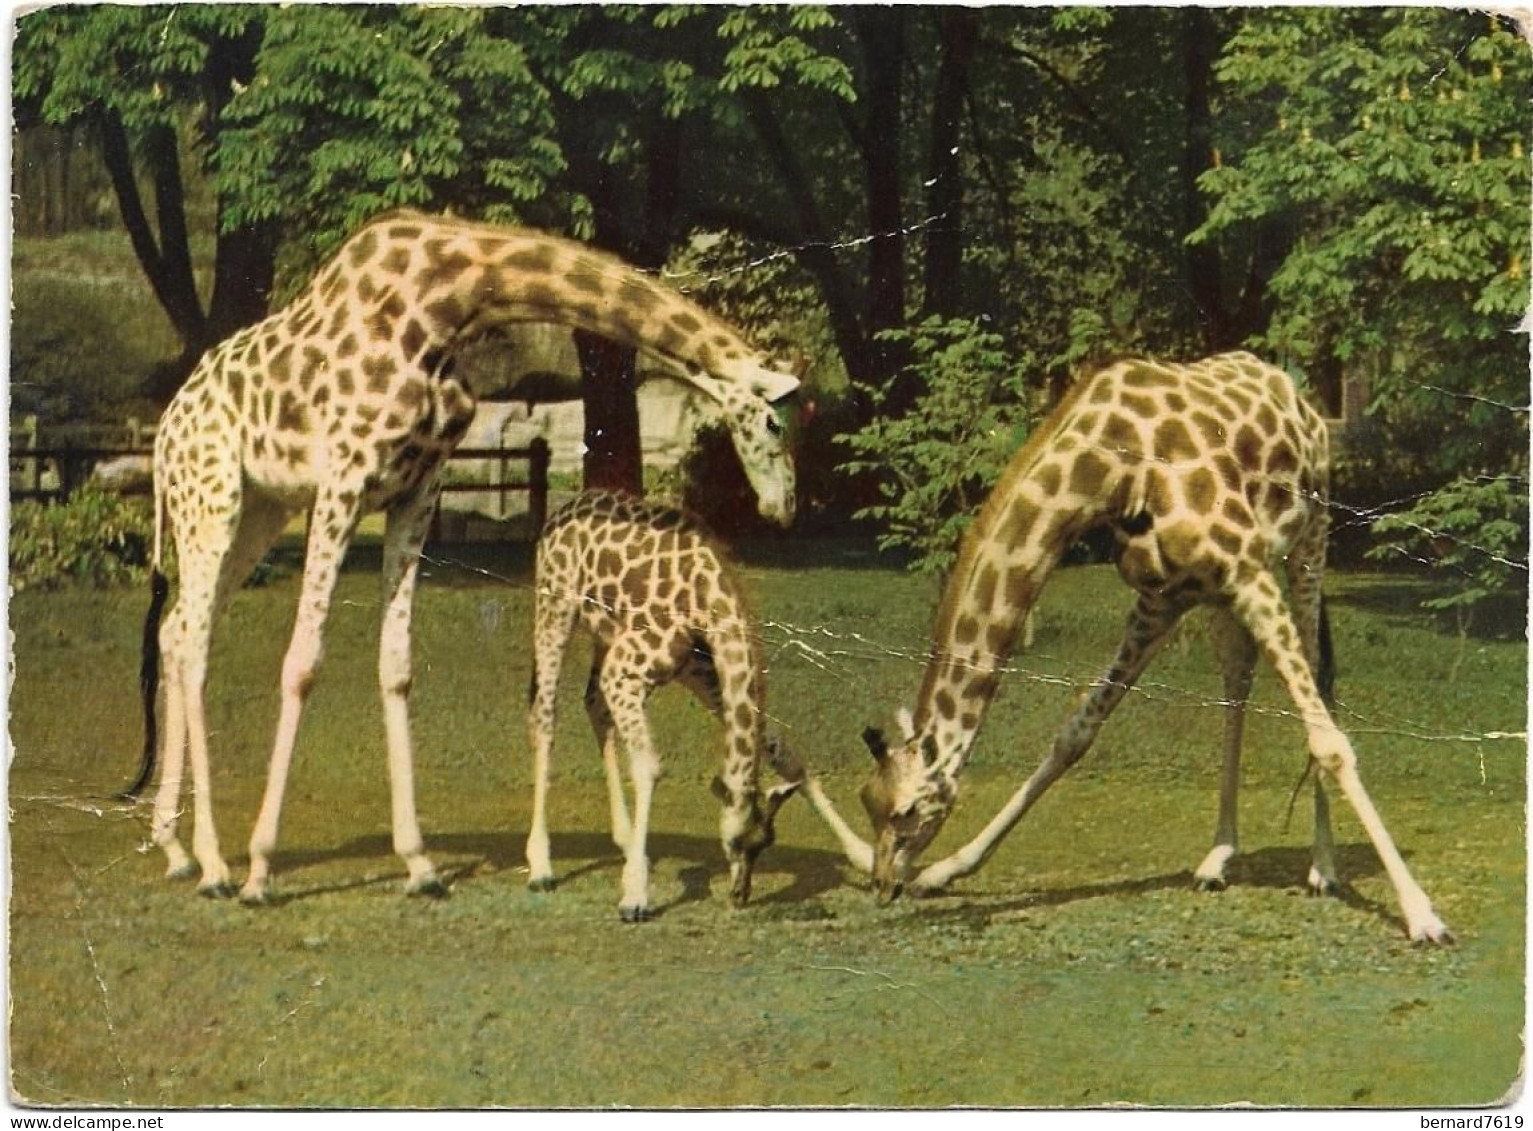 Animaux  -   Girafe Afrique - Parc Zoologique Et Menageres Paris - Jirafas